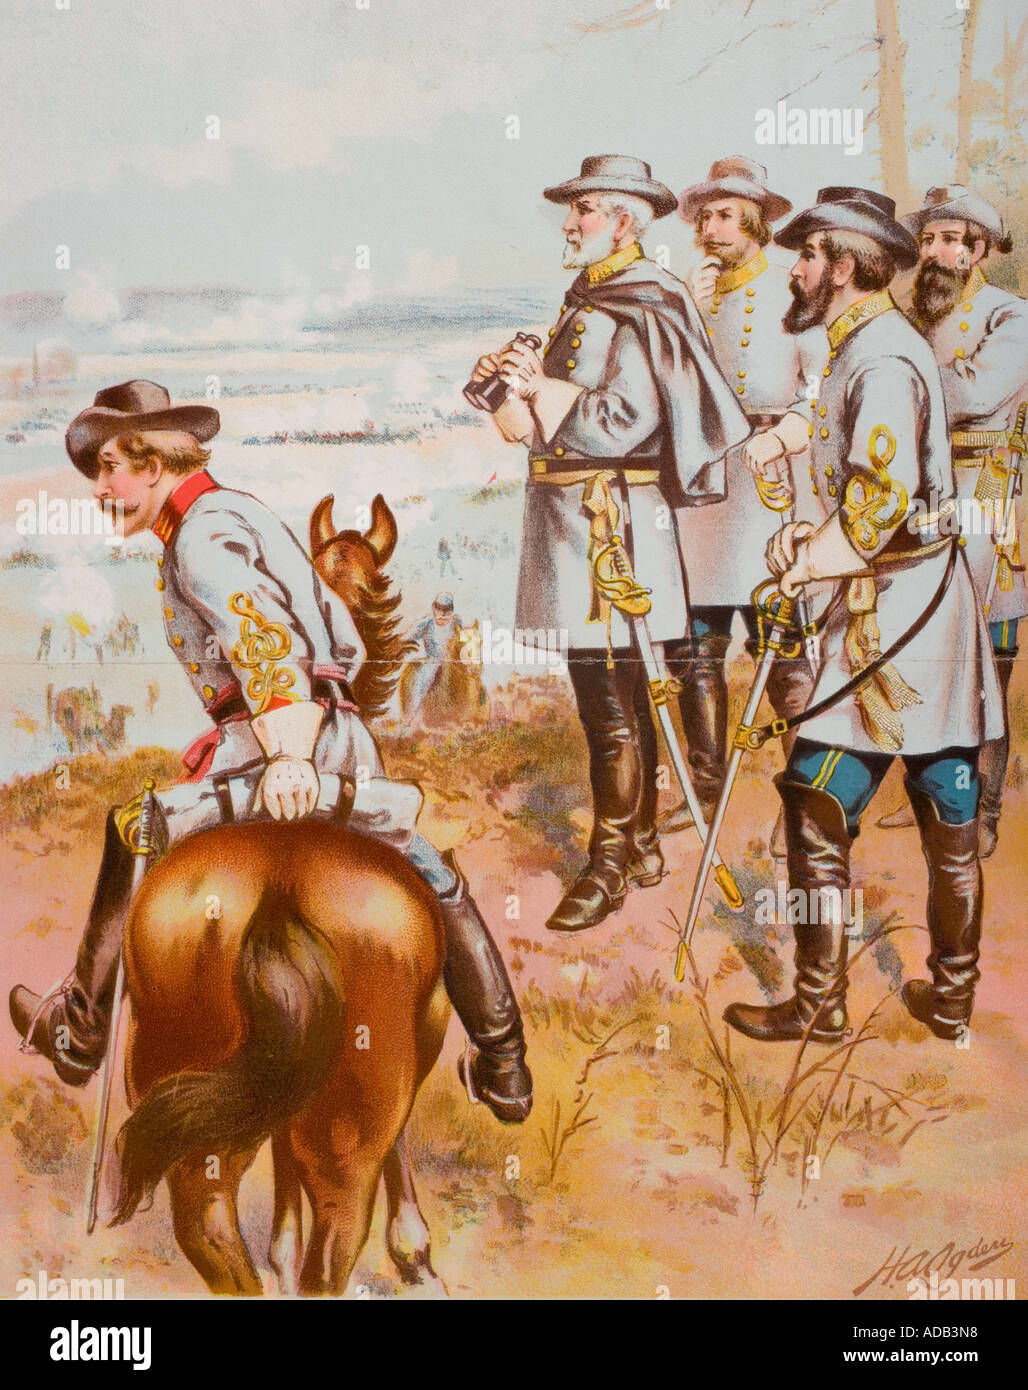 General Robert E Lee at the Battle of Fredericksburg, December 13 1862.  Artist H A Ogden Stock Photo